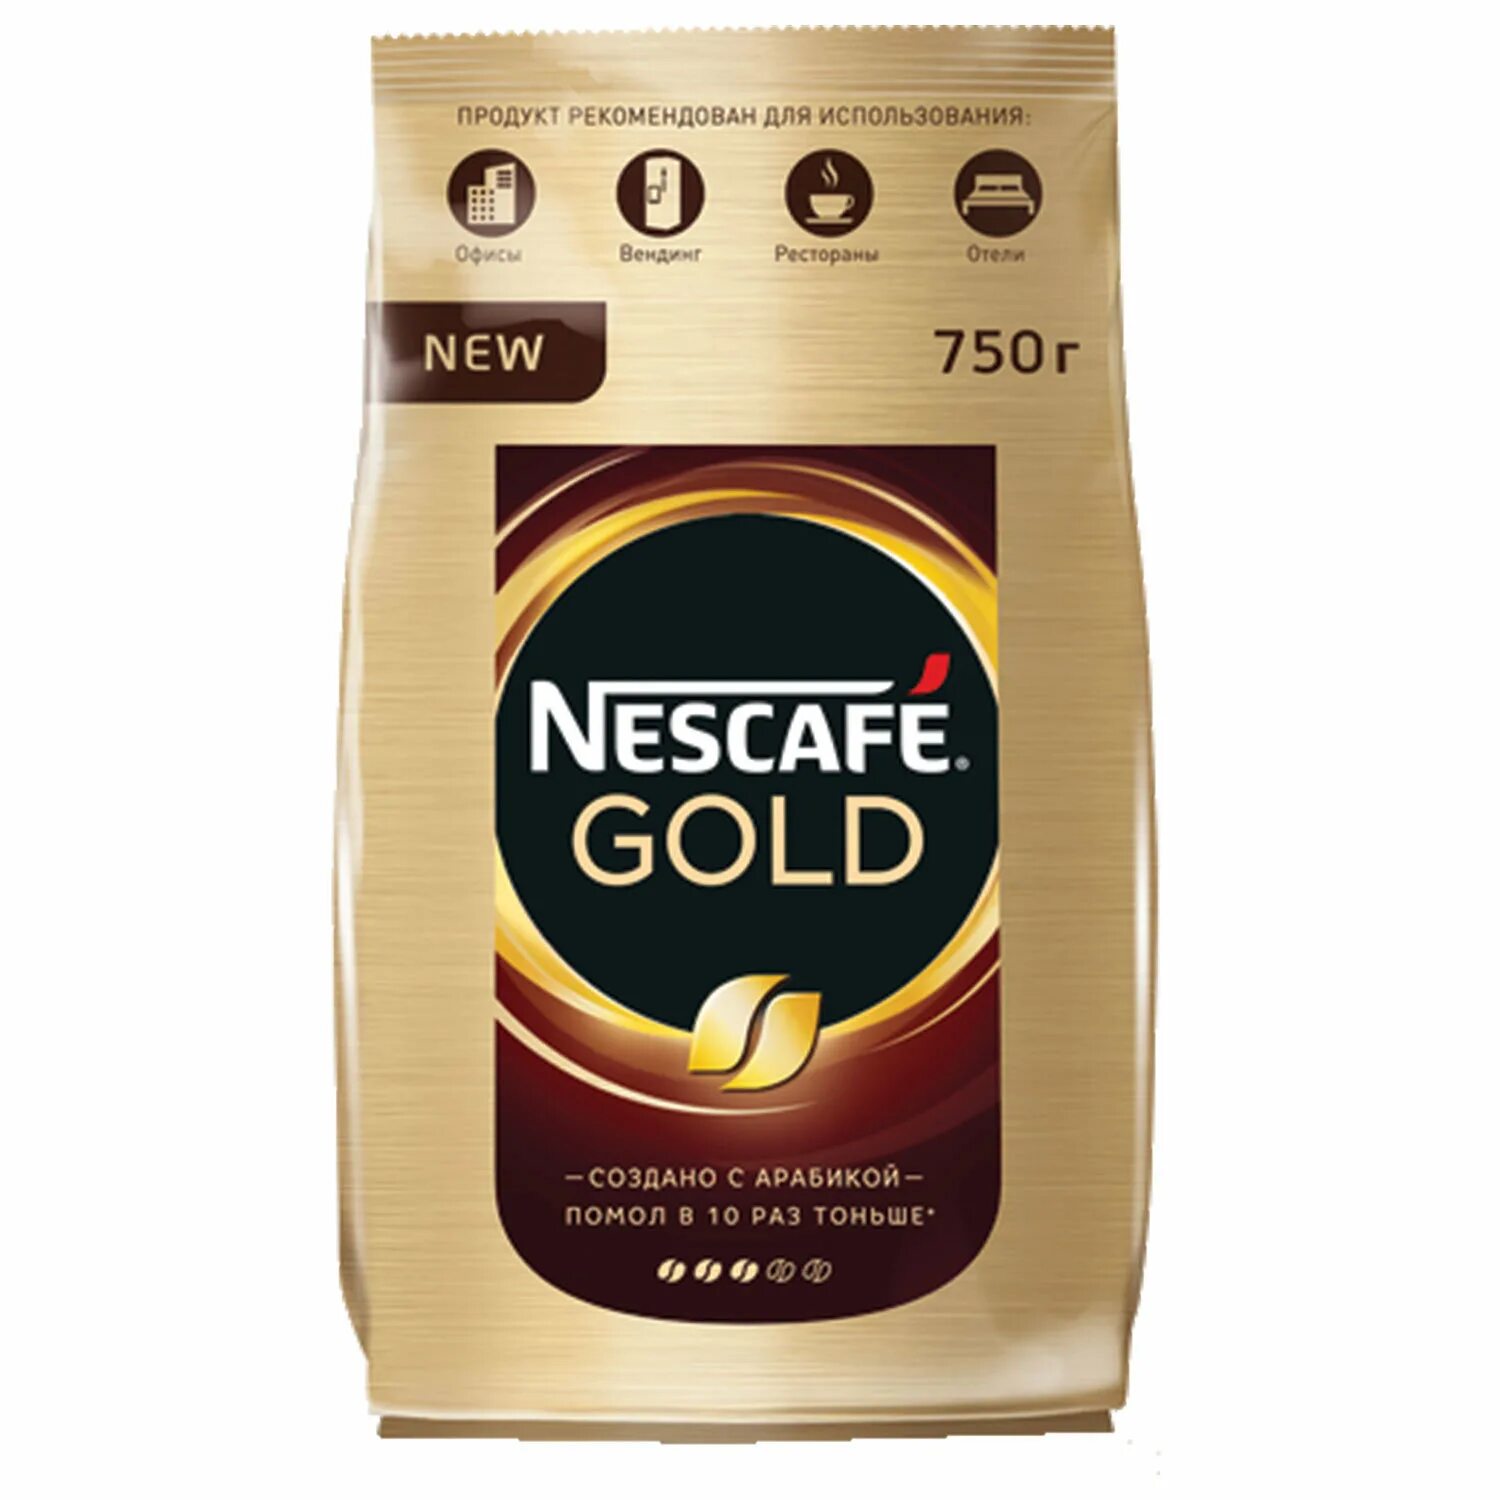 Купить кофе растворимый нескафе голд. Nescafe кофе Gold 900г.. Кофе Нескафе Голд 900 гр. Nescafe Gold 750 гр. Кофе "Nescafe Gold", 750 гр..